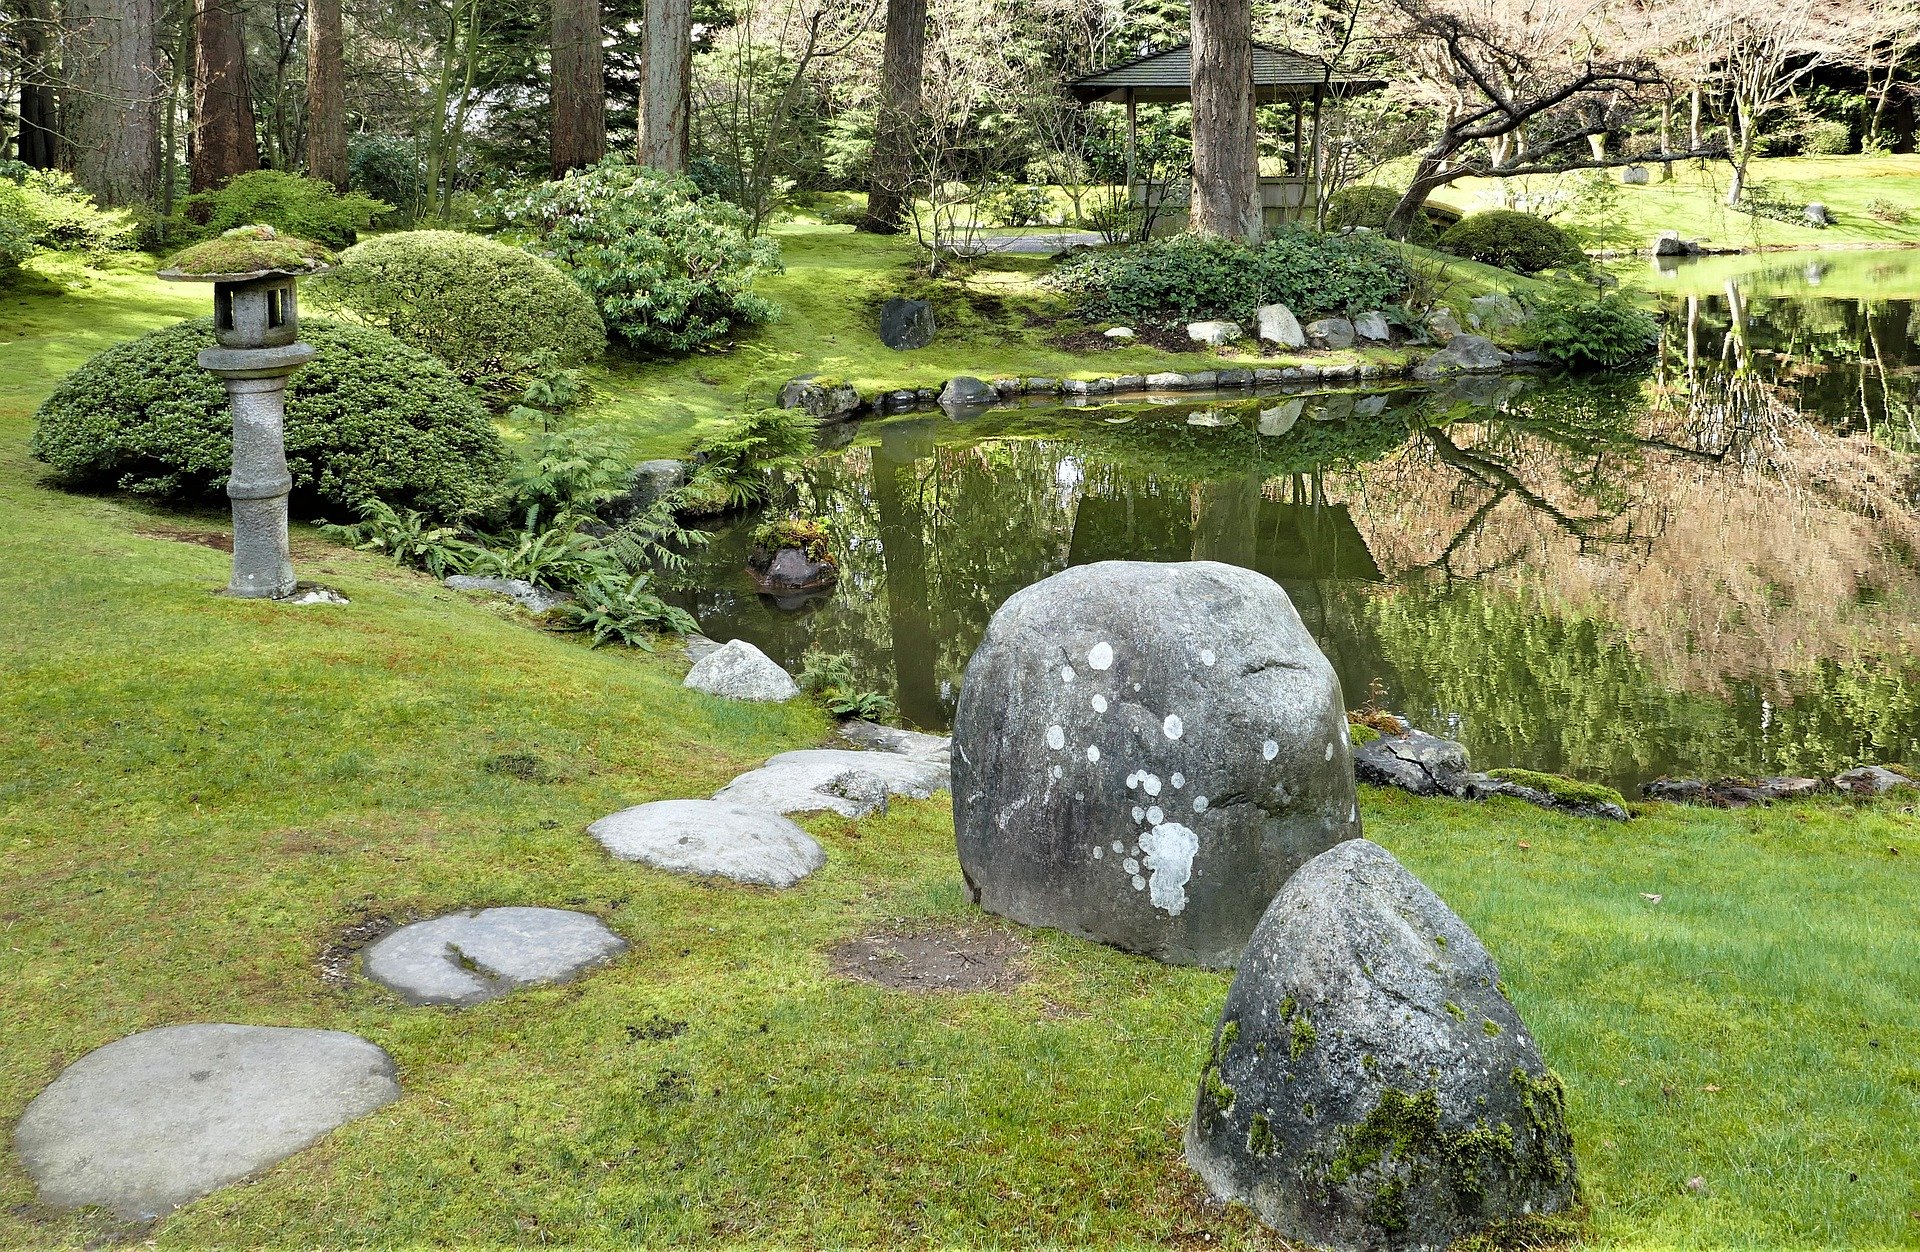 Comment installer des pas japonais dans son jardin ? – Fermes et